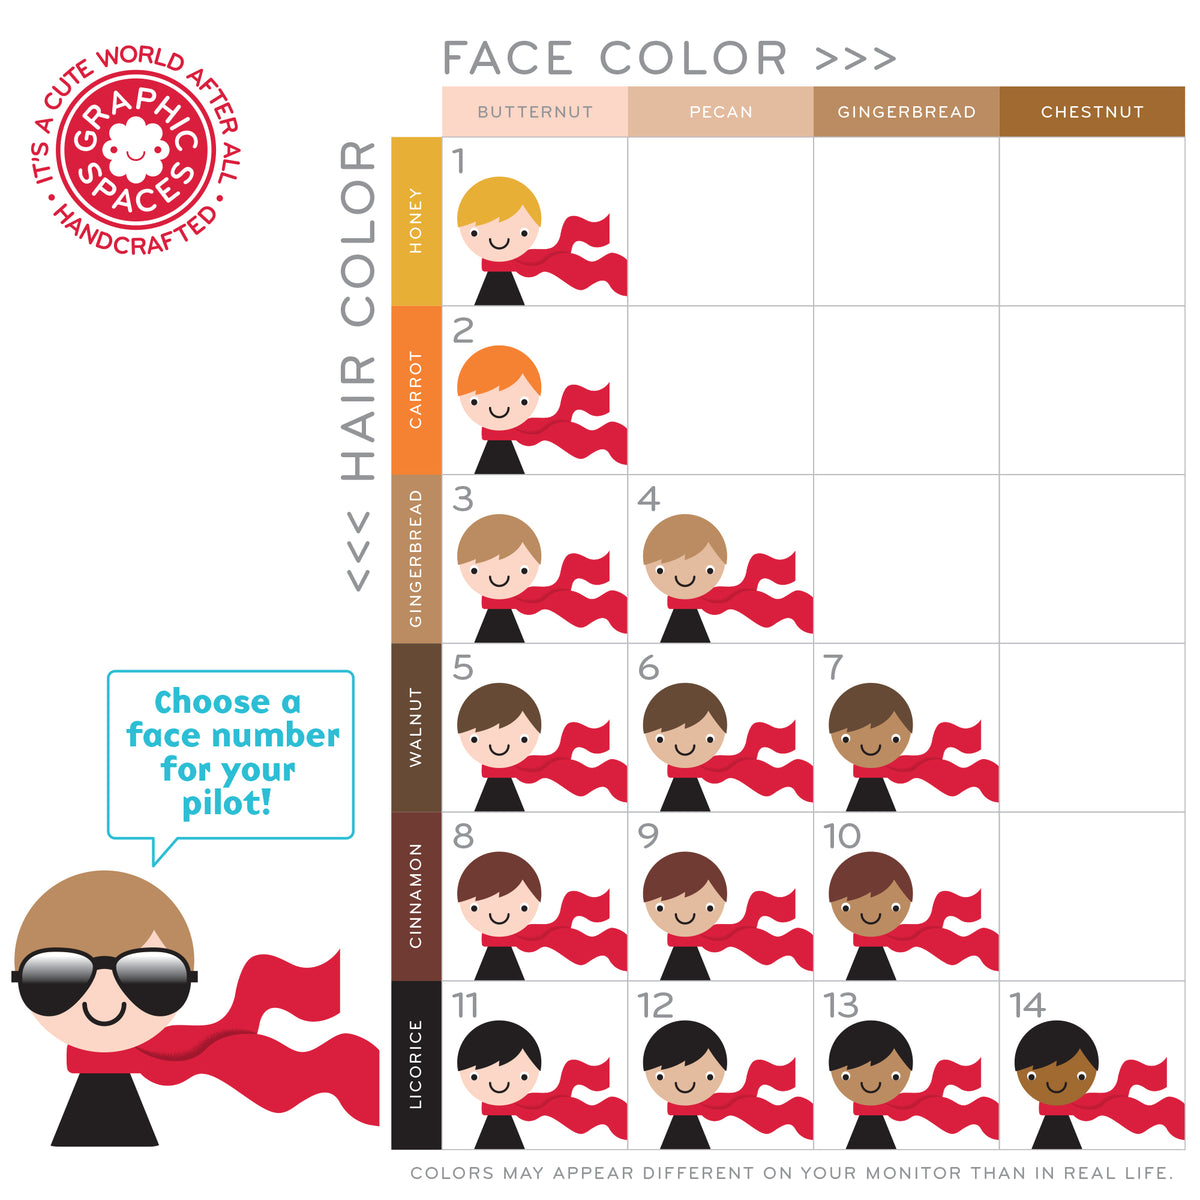 Boy face color option chart.